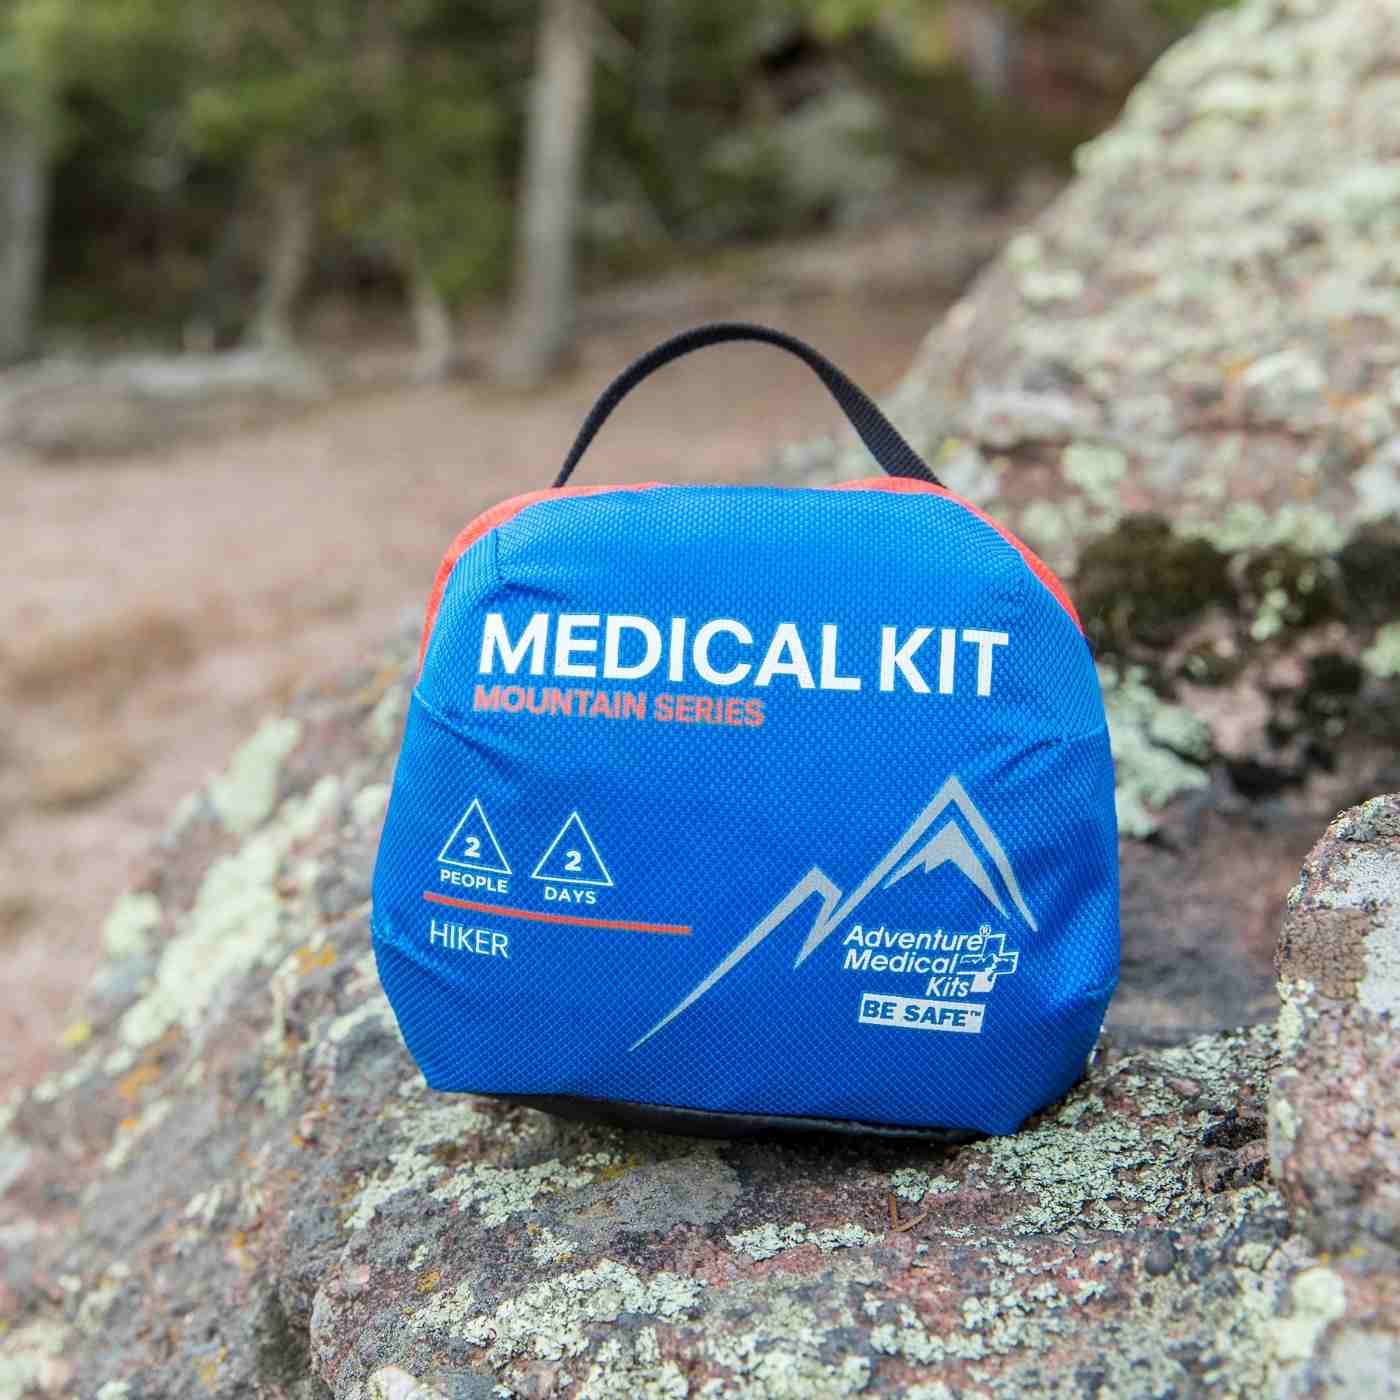 Mountain Series Medical Kit - Hiker kit on rock